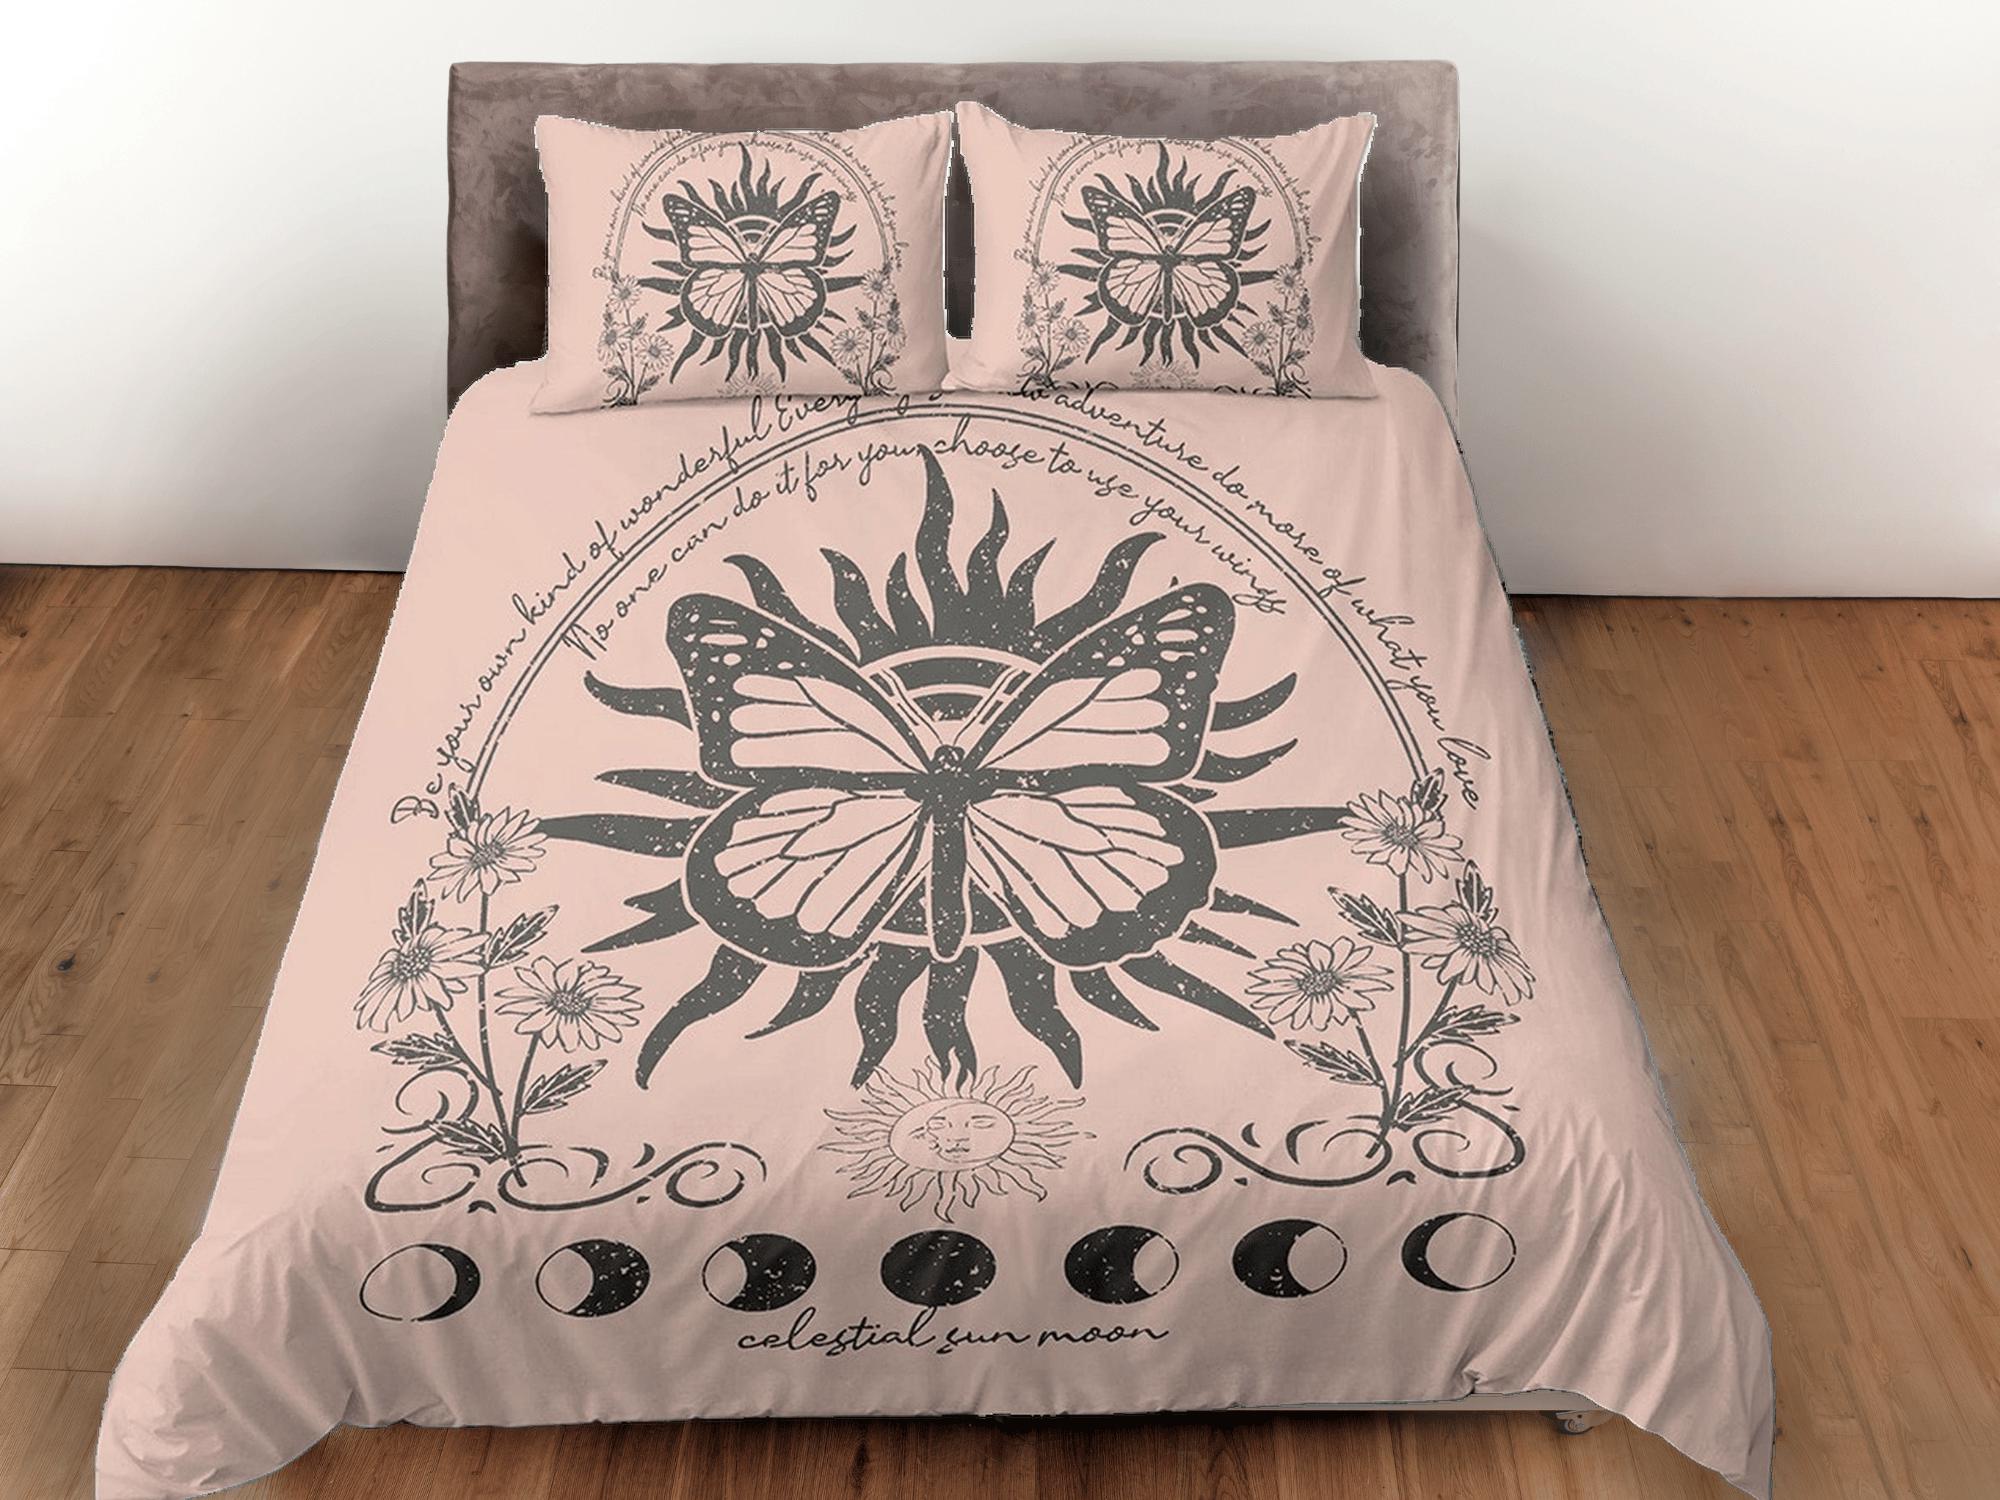 daintyduvet Celestial bedding, witchy decor dorm bedding, monarch butterfly aesthetic duvet, boho bedding set full king queen, astrology gift gothic art